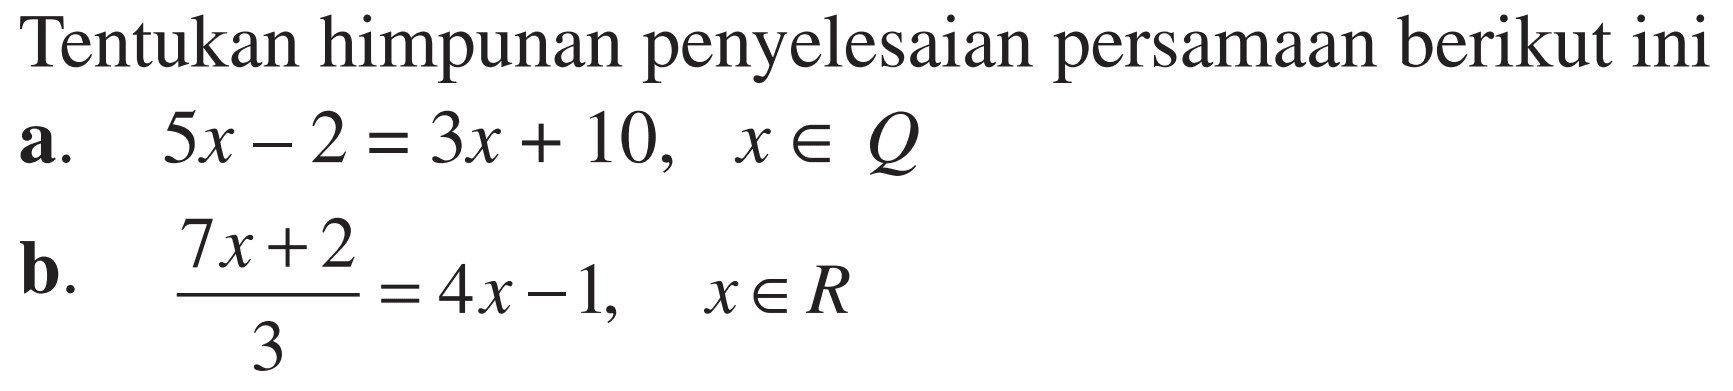 Tentukan himpunan penyelesaian persamaan berikut ini a. 5x-2=3x+10, x e Q b. (7x+2)/3=4x-1, x e R